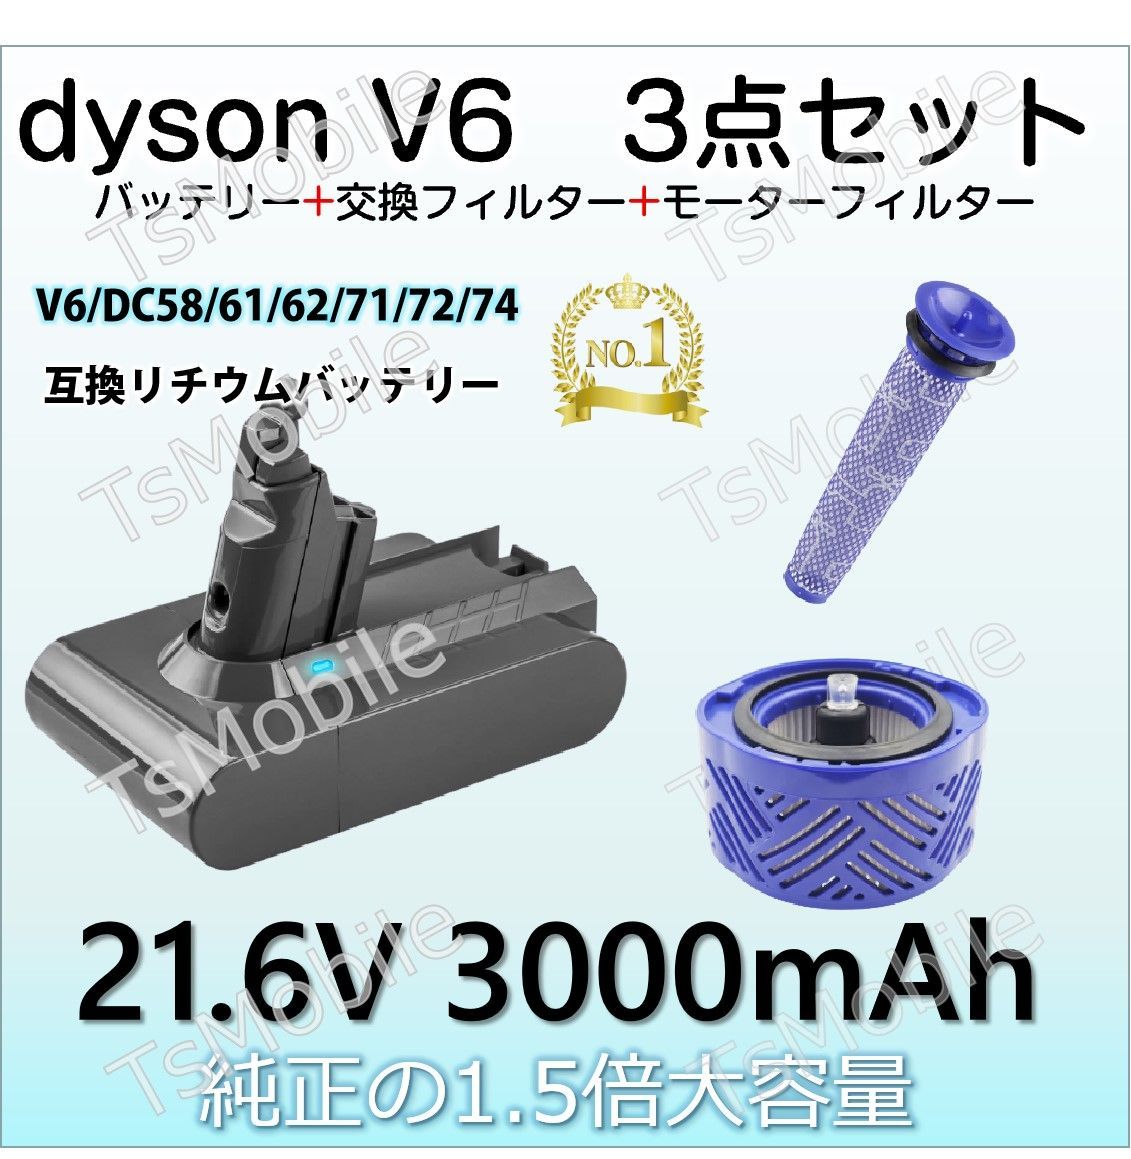 ダイソン互換V6バッテリー 3000mAh お得3点セット